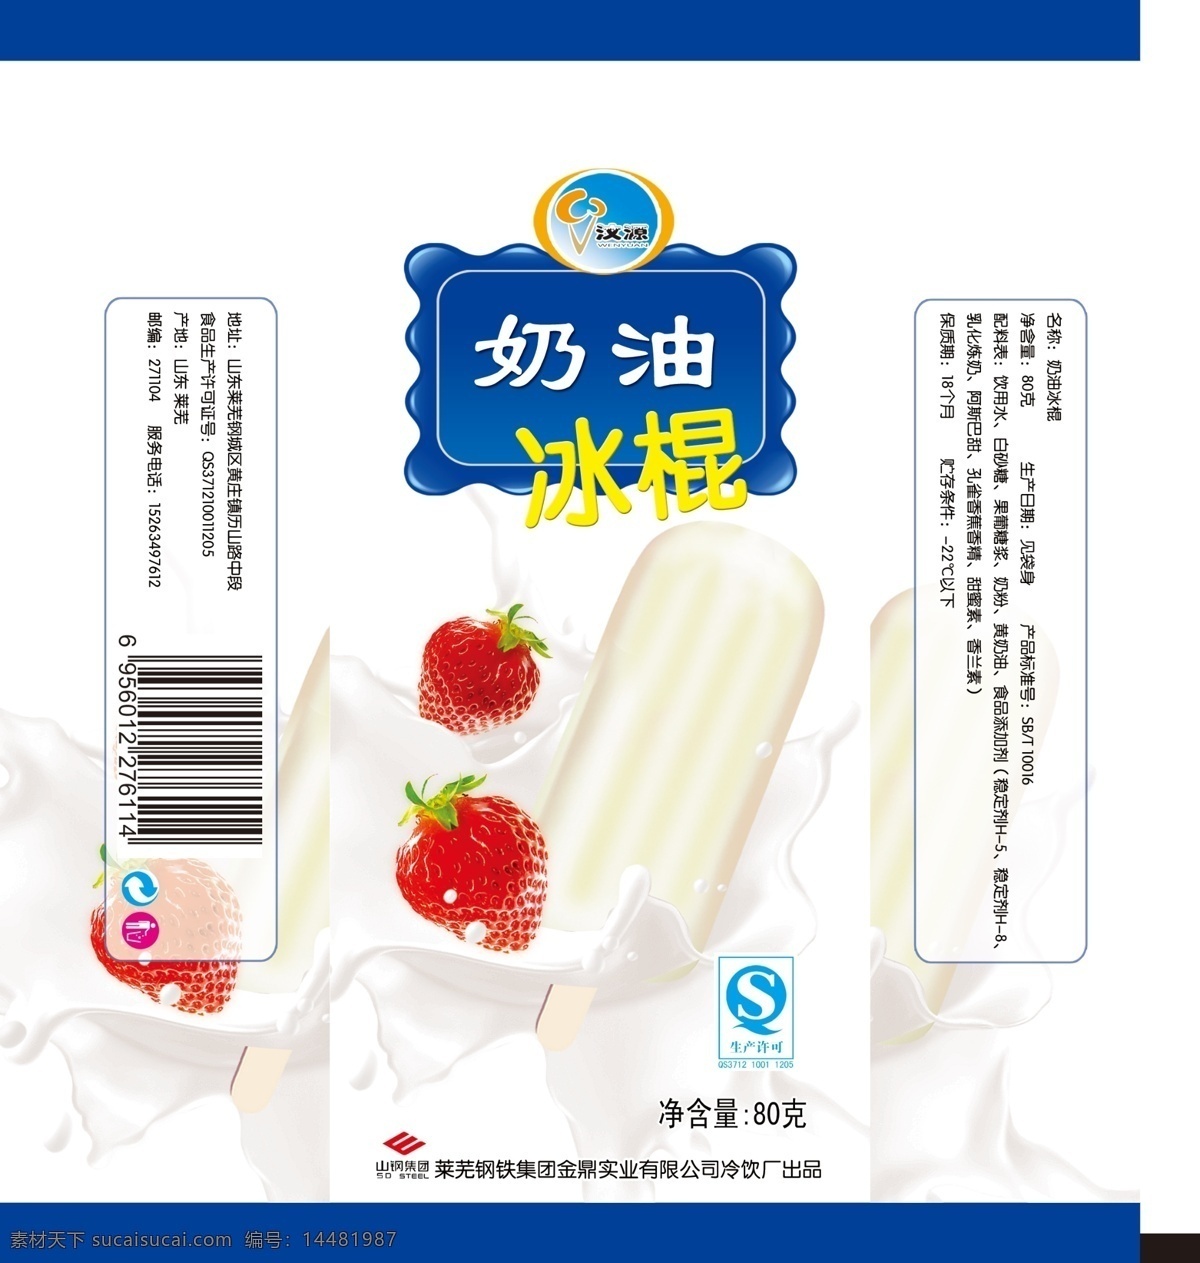 包装设计 冰棒 草莓 广告设计模板 奶油 牛奶 雪糕 源文件 包装 模板下载 奶油冰棒包装 psd源文件 餐饮素材